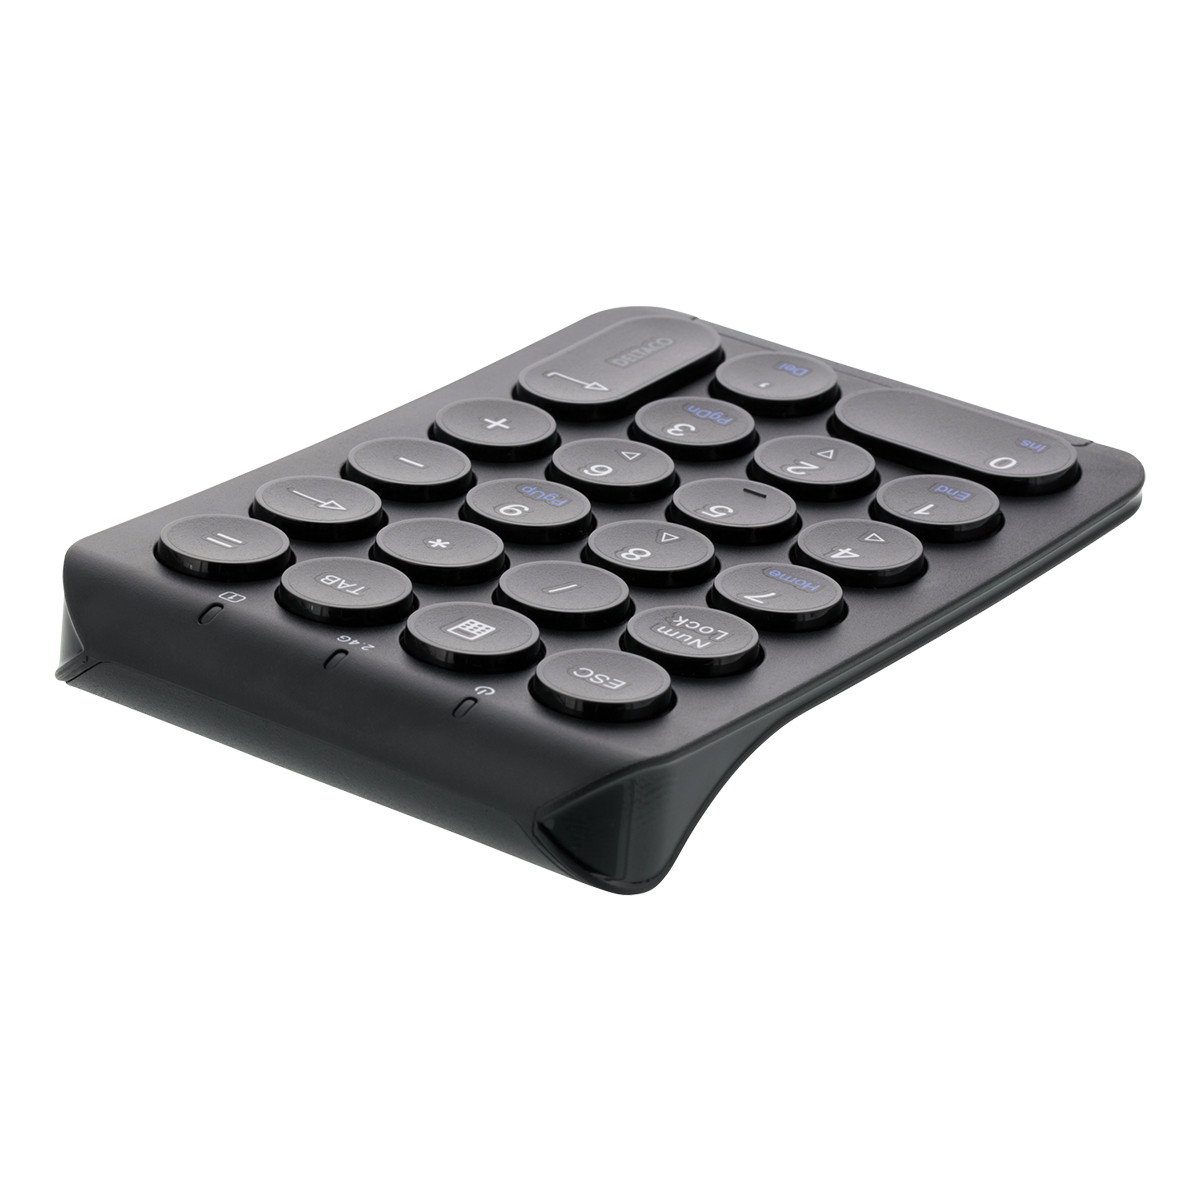 DELTACO trådlöst numeriskt tangentbord, uppladdningsbart batteri, 22 t